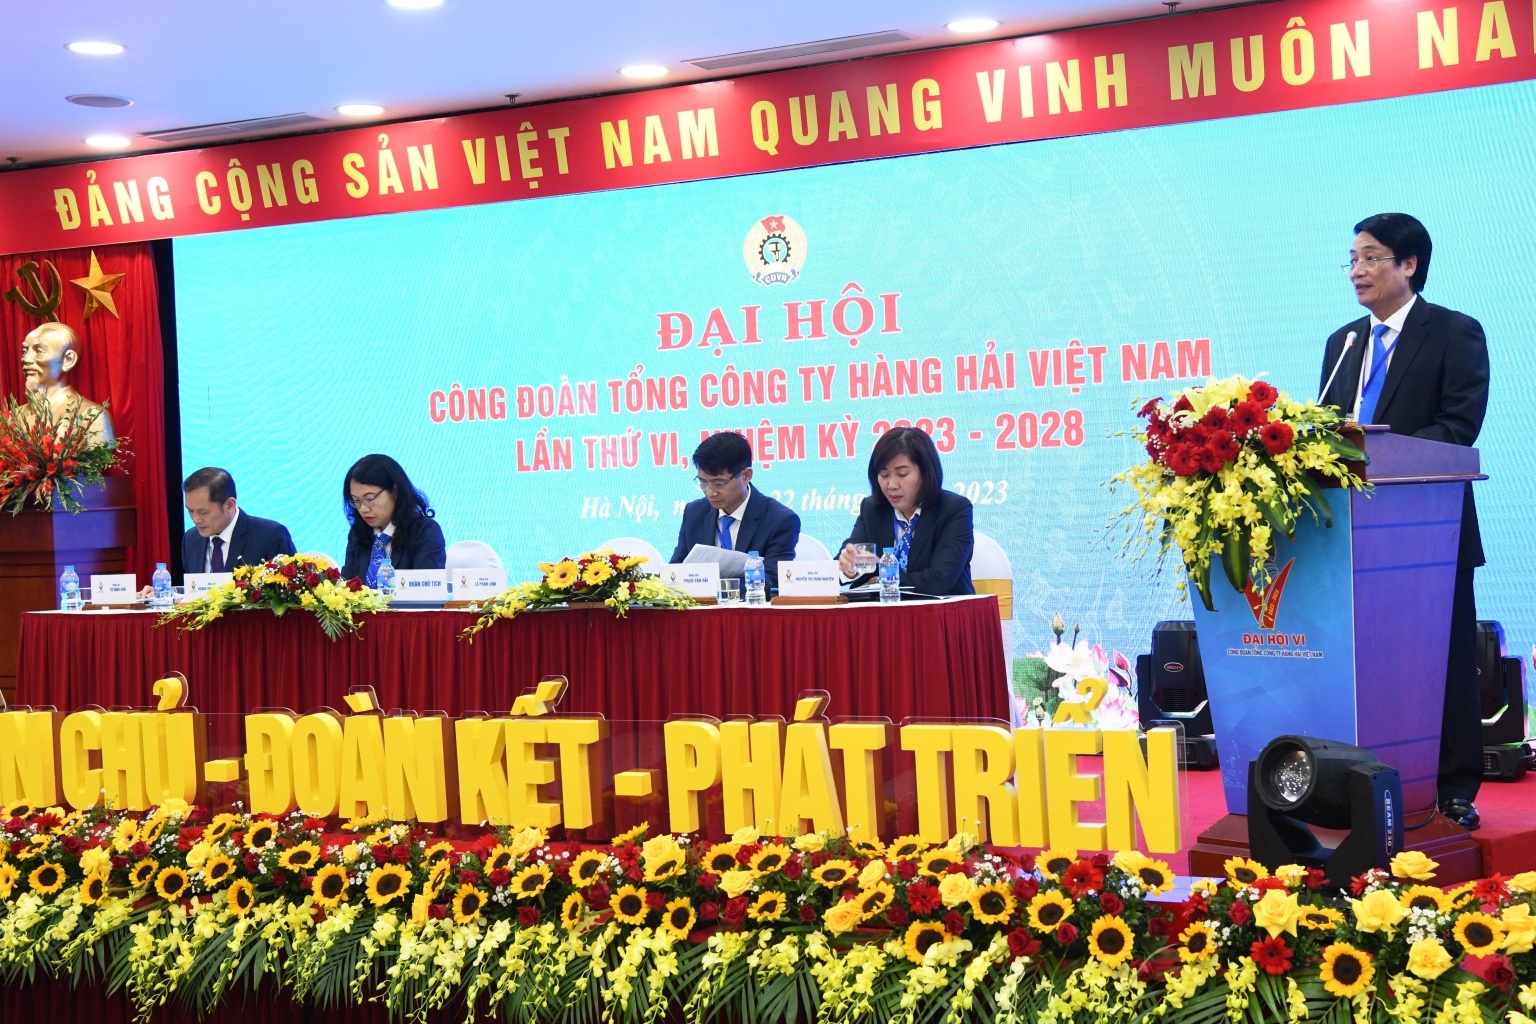 Phiên làm việc thứ nhất Đại hội Công đoàn Tổng Công ty Hàng hải Việt Nam lần thứ VI